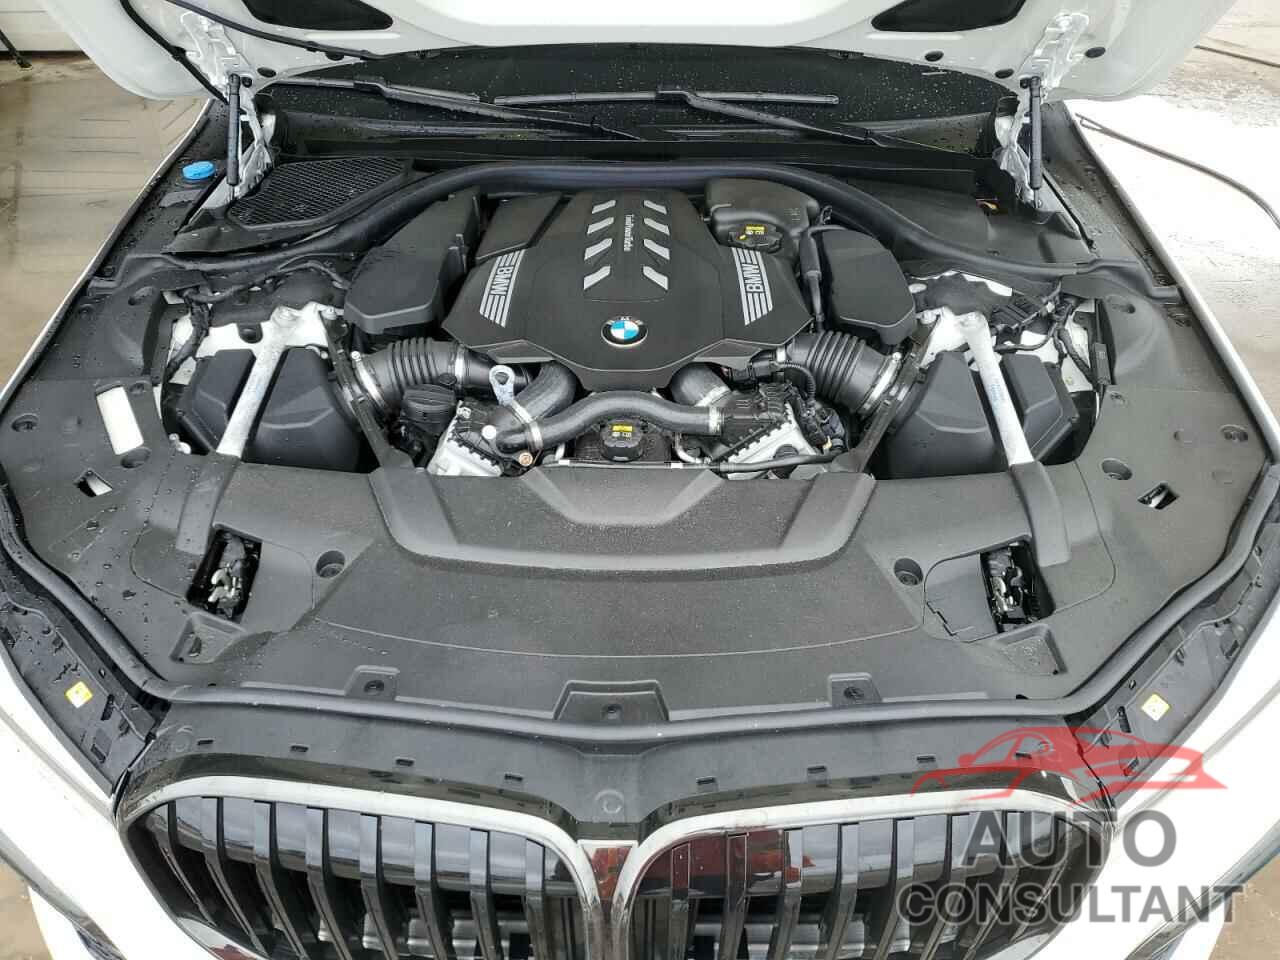 BMW 7 SERIES 2020 - WBA7U2C03LCD68461